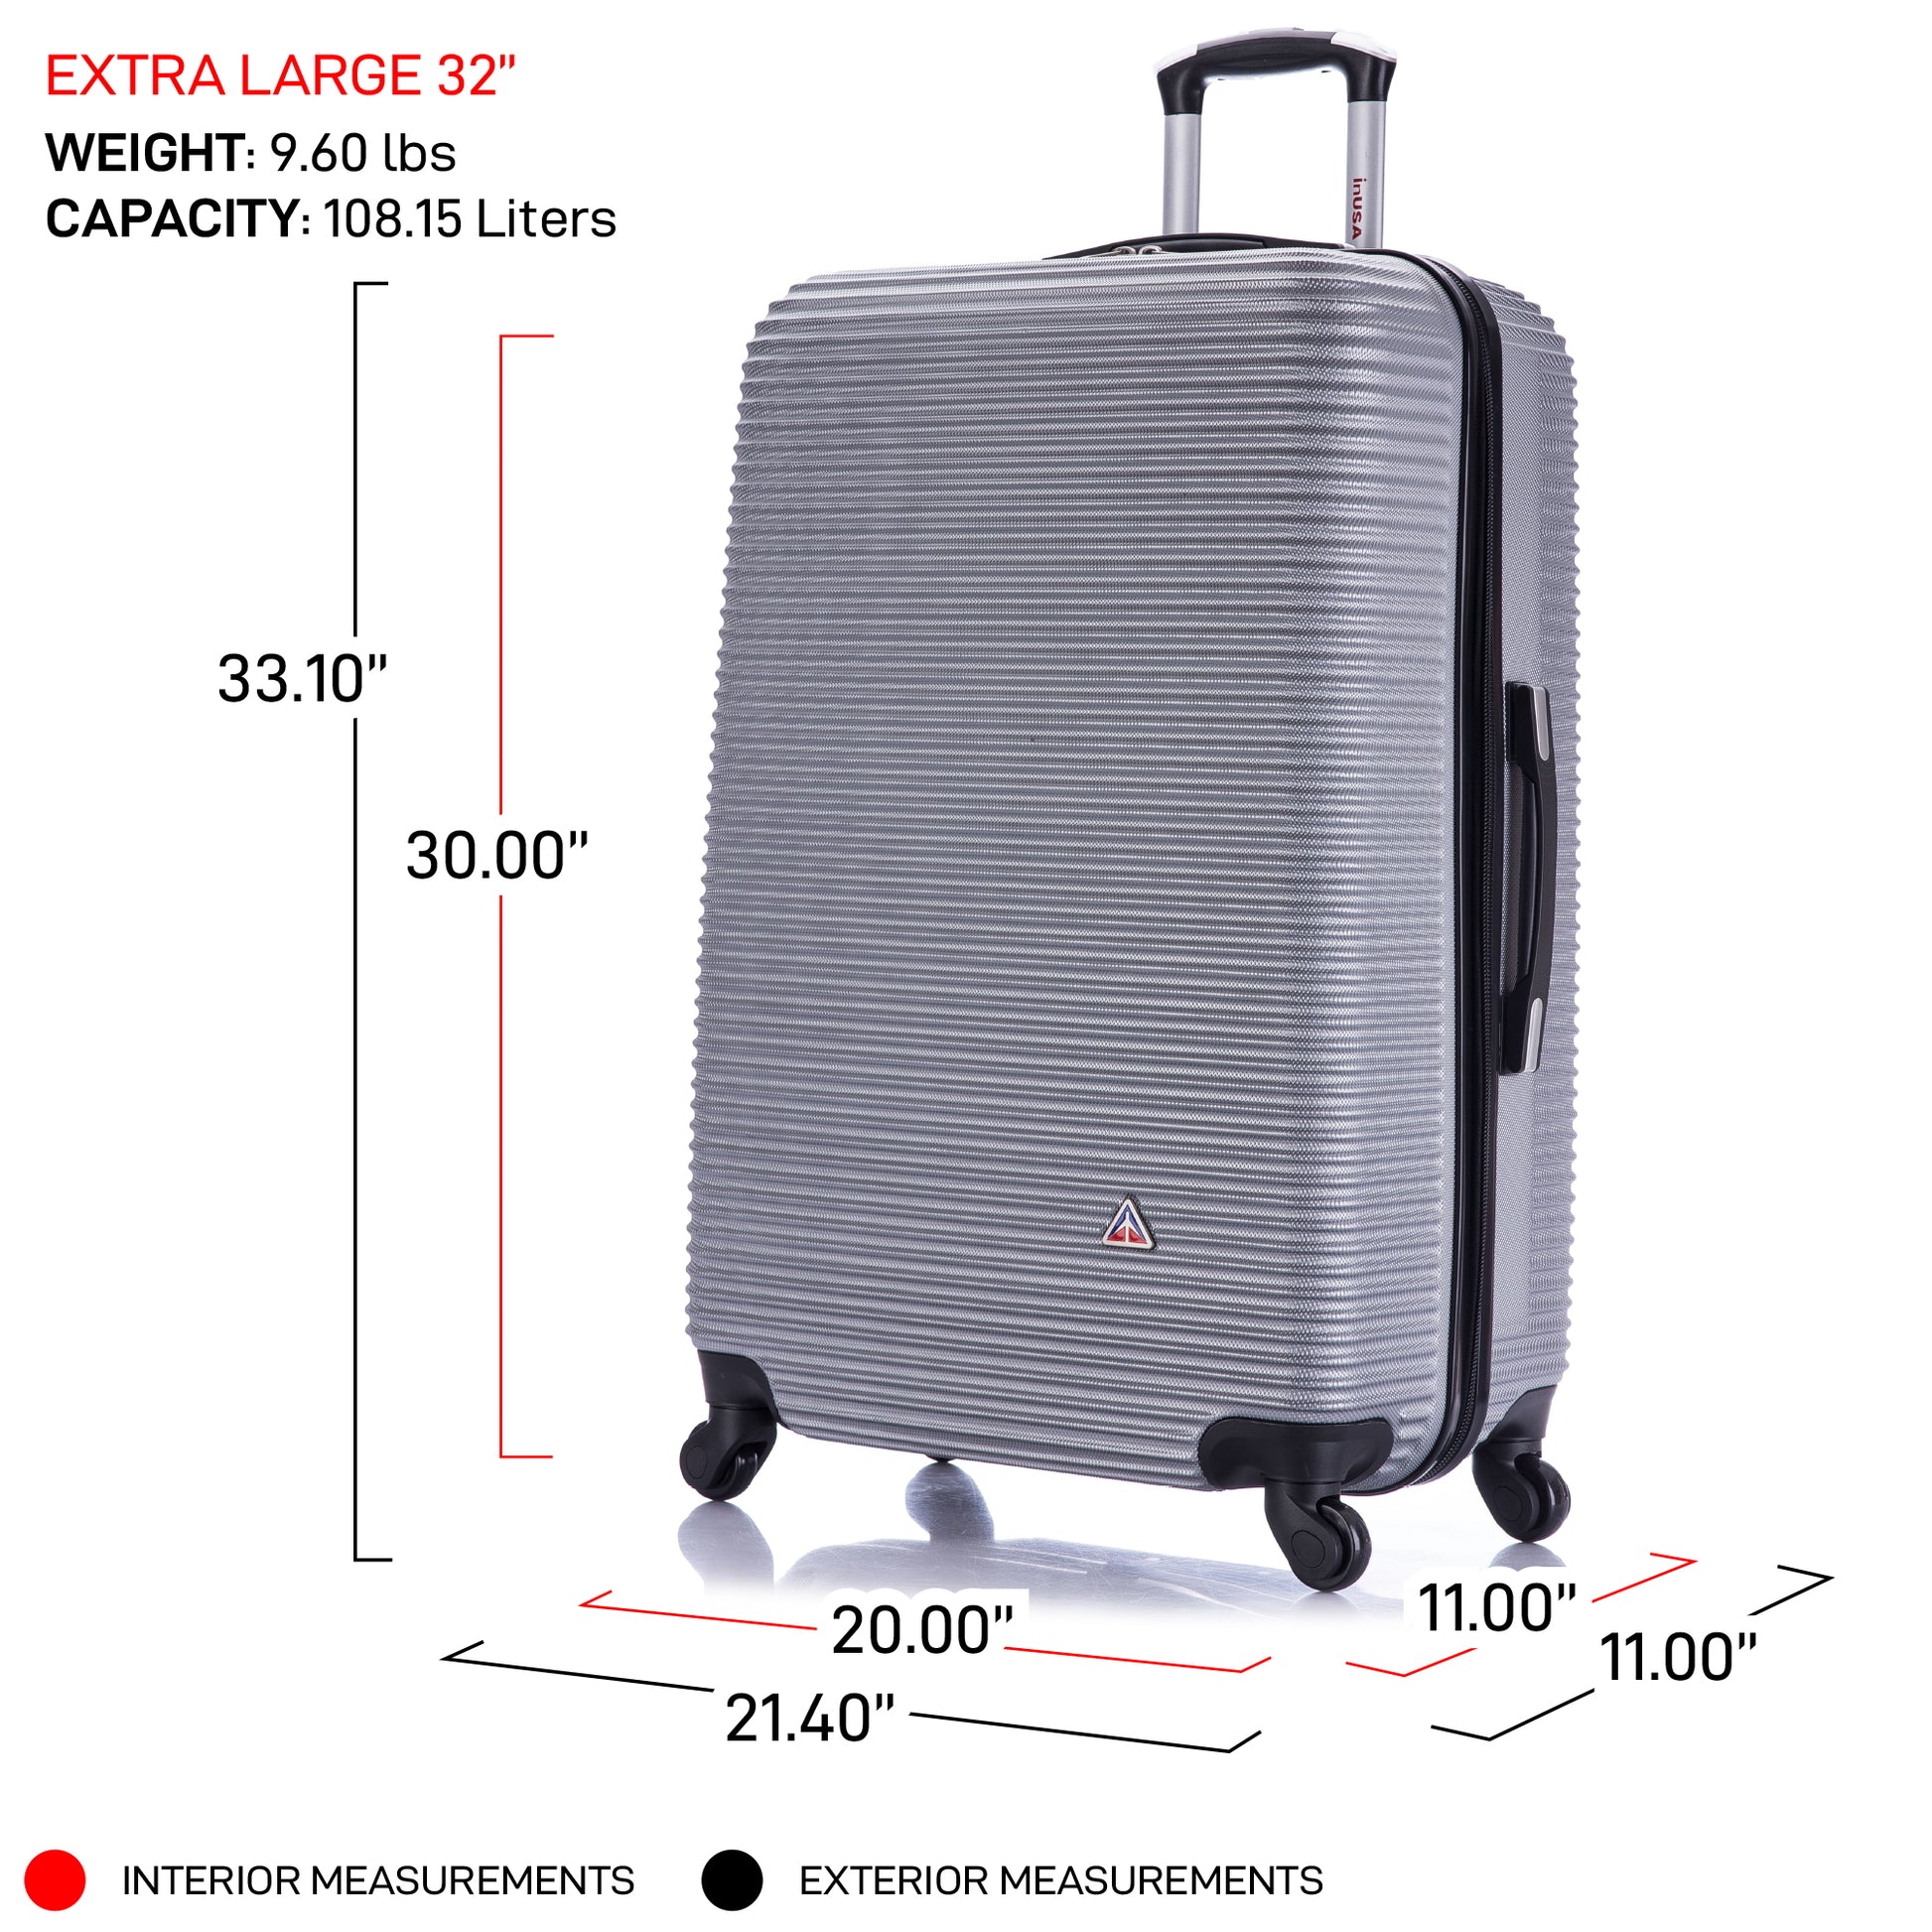 Royal 32 Inch Extra Large Hardside Luggage